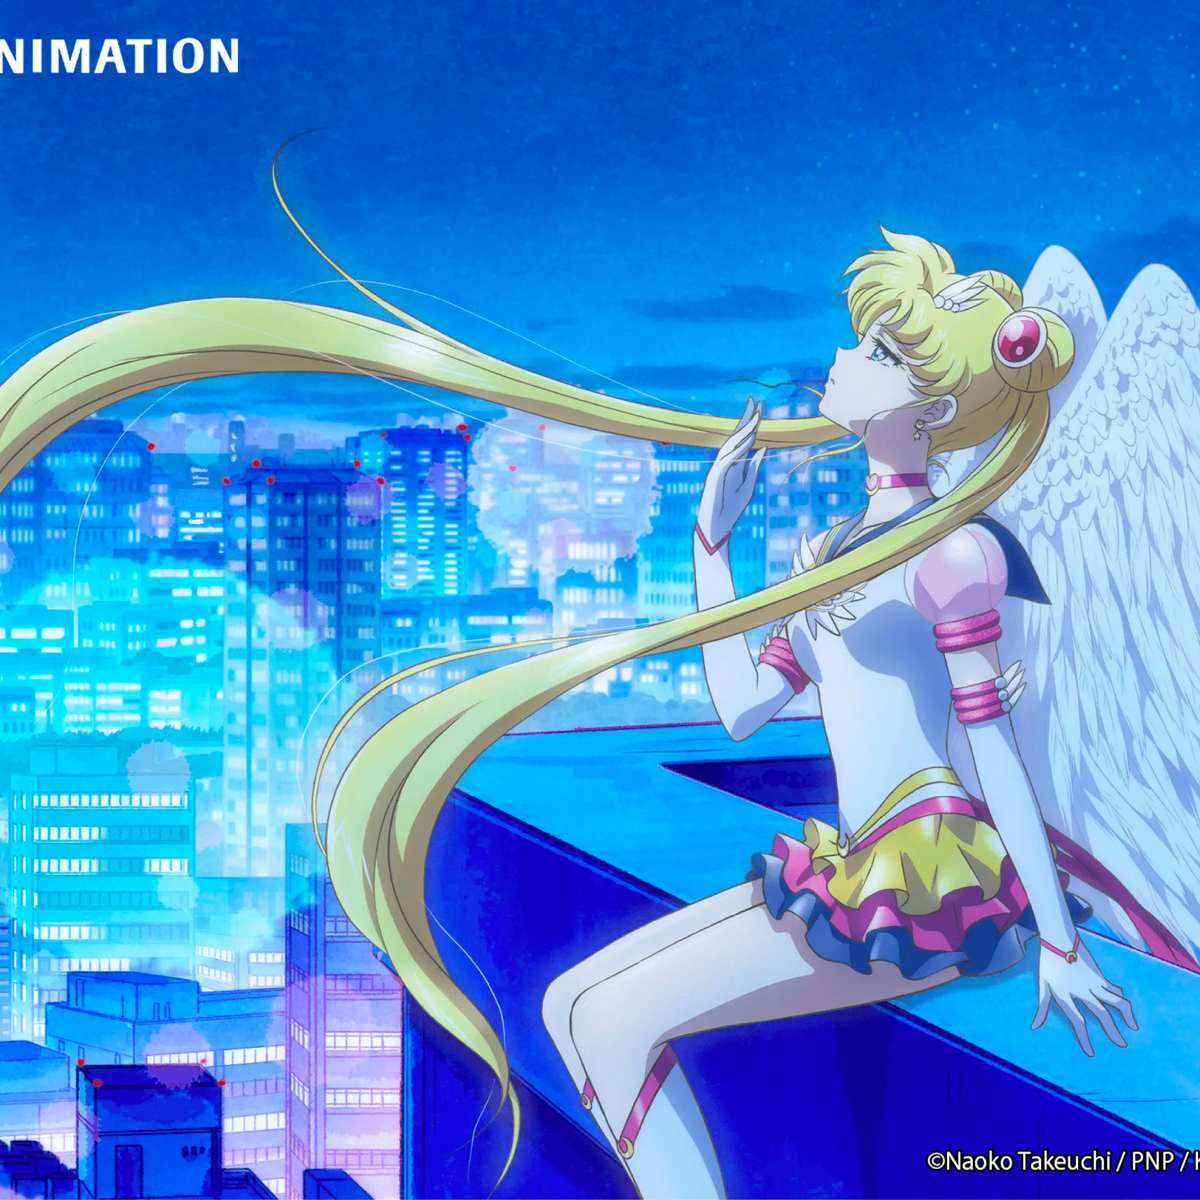 Sailor Moon Cosmos the Movie anunciado para 2023